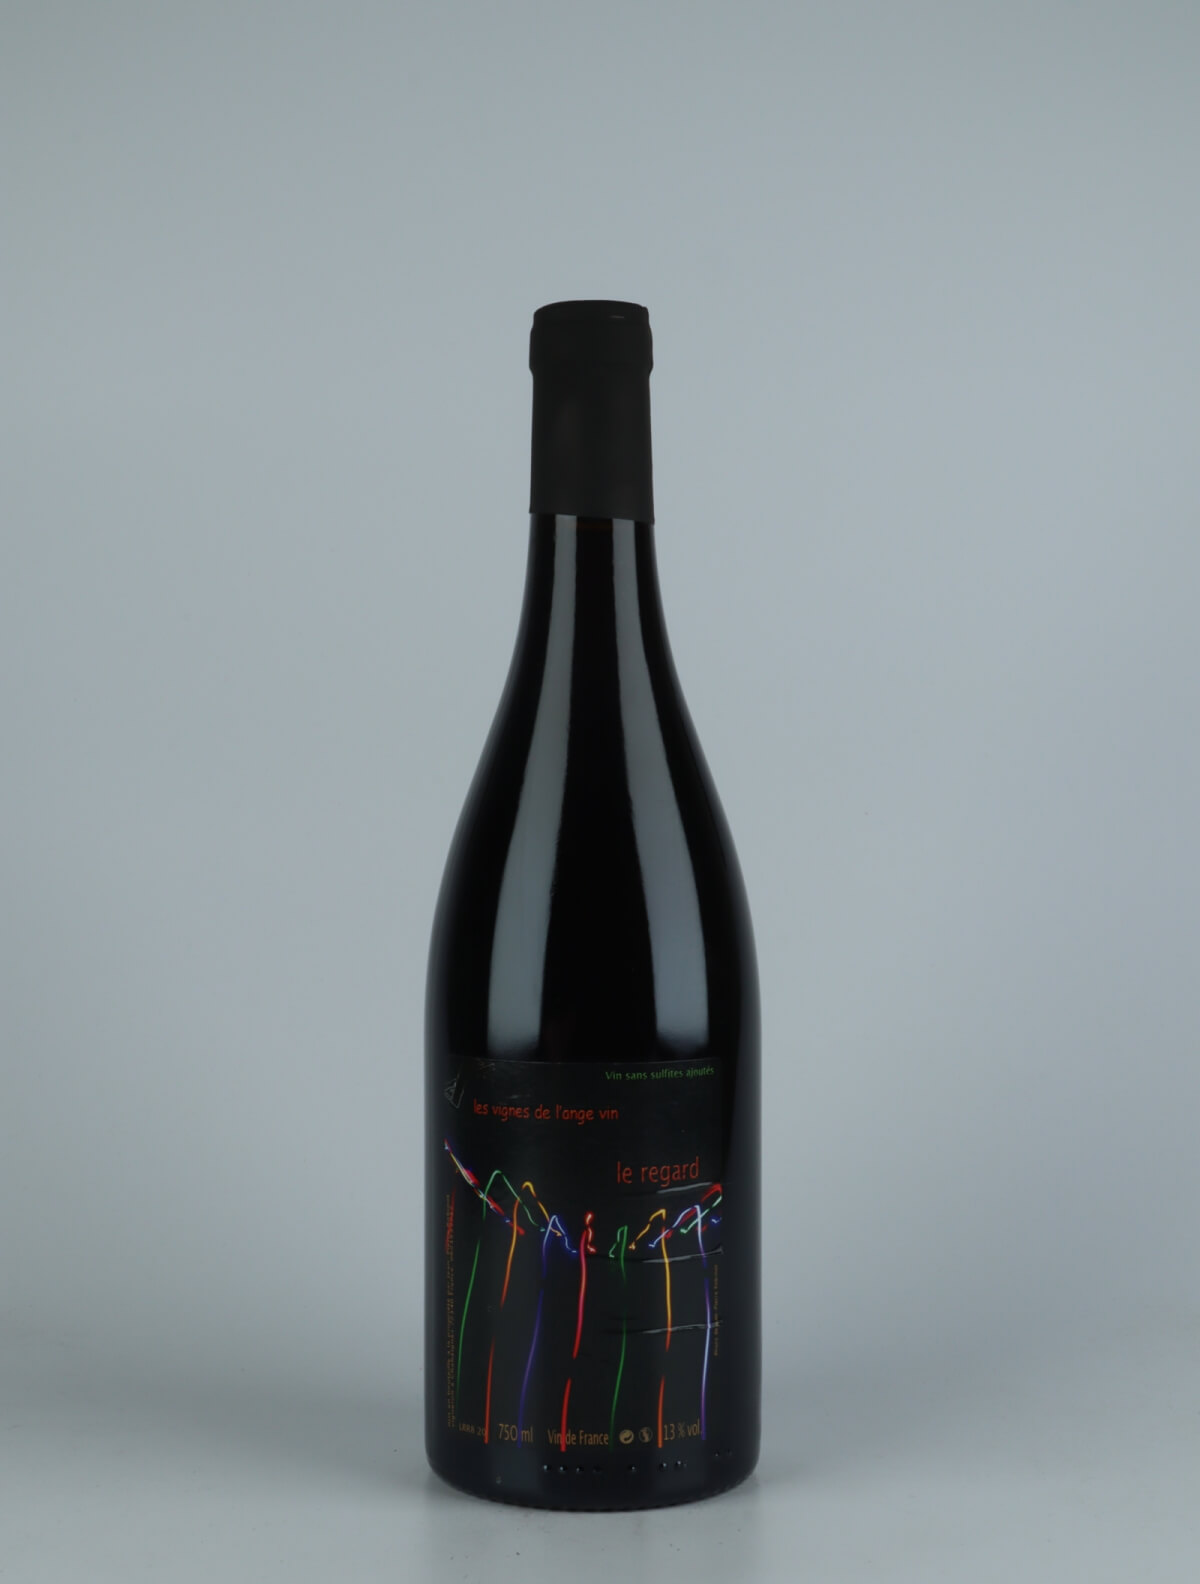 A bottle 2020 Le Regard Red wine from Jean-Pierre Robinot, Loire in France